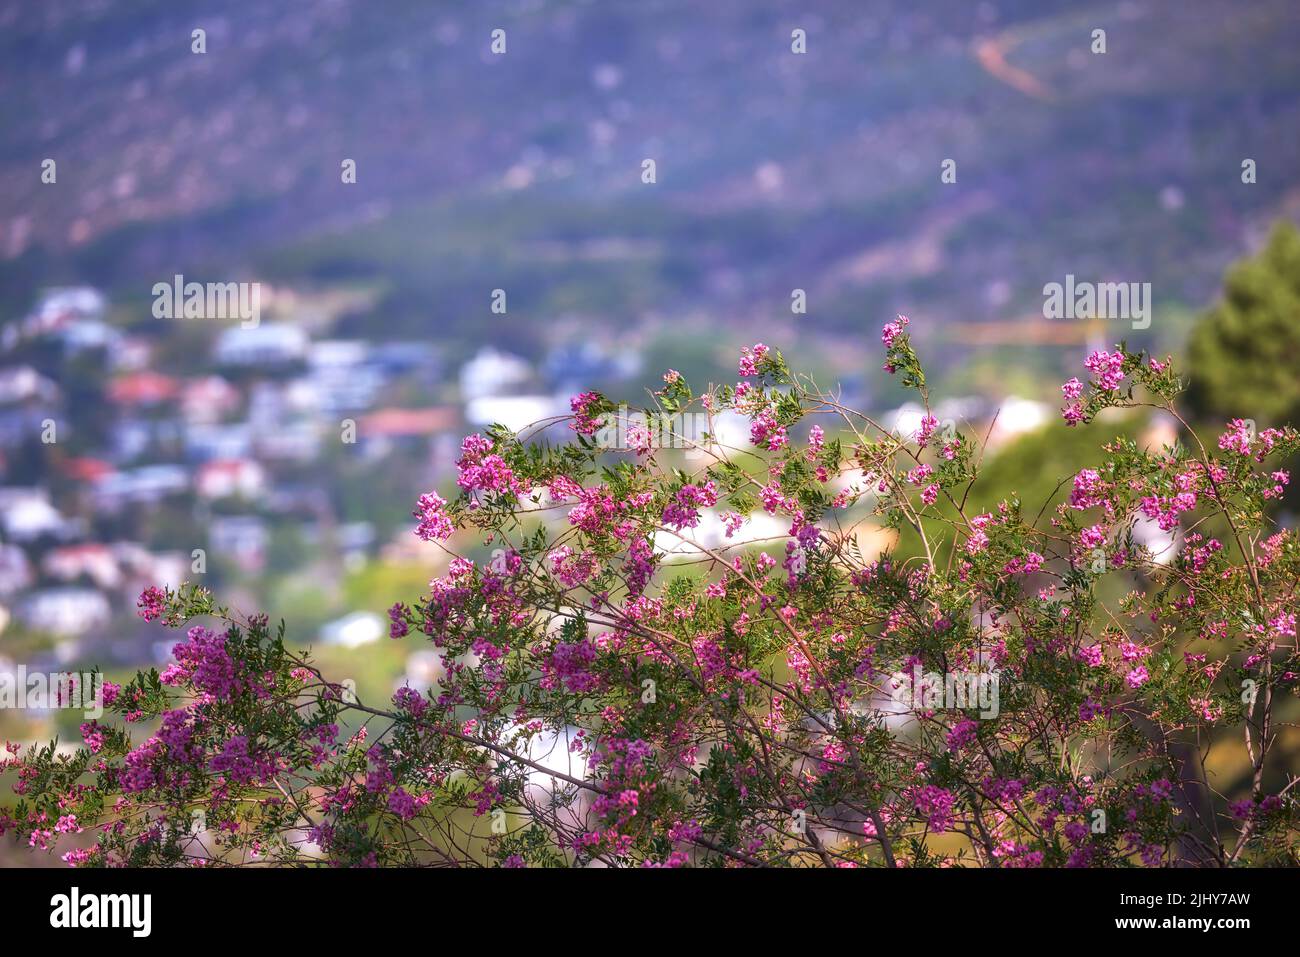 Fiore di paperflower rosa su steli verdi che crescono su un lato della collina contro uno sfondo urbano della città. Primo piano di paesaggio paesaggistico ambiente con boscaglia fine Foto Stock